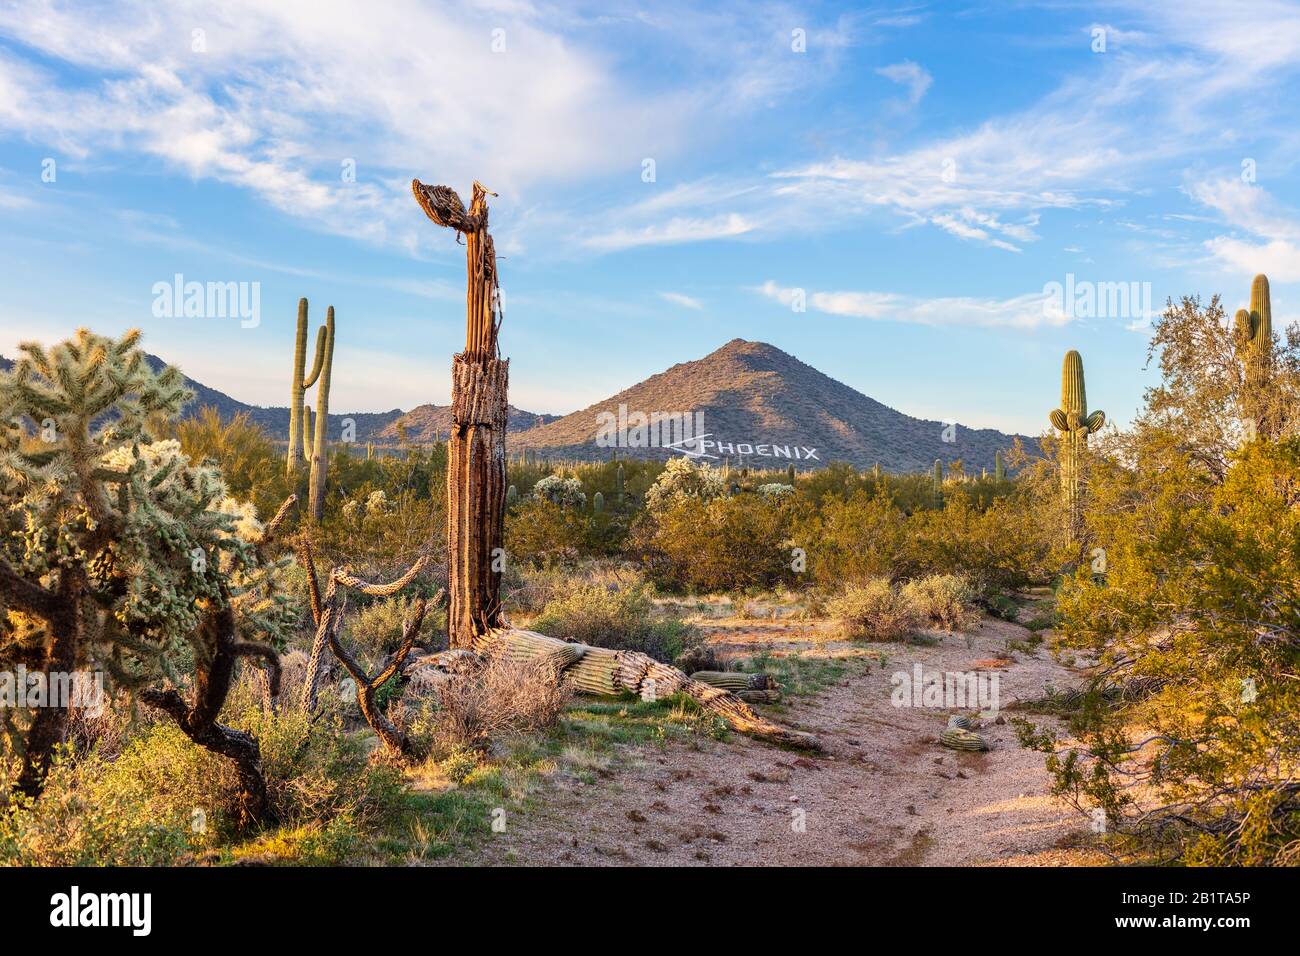 Paysage désertique pittoresque avec cactus Saguaro à Phoenix, Arizona Banque D'Images